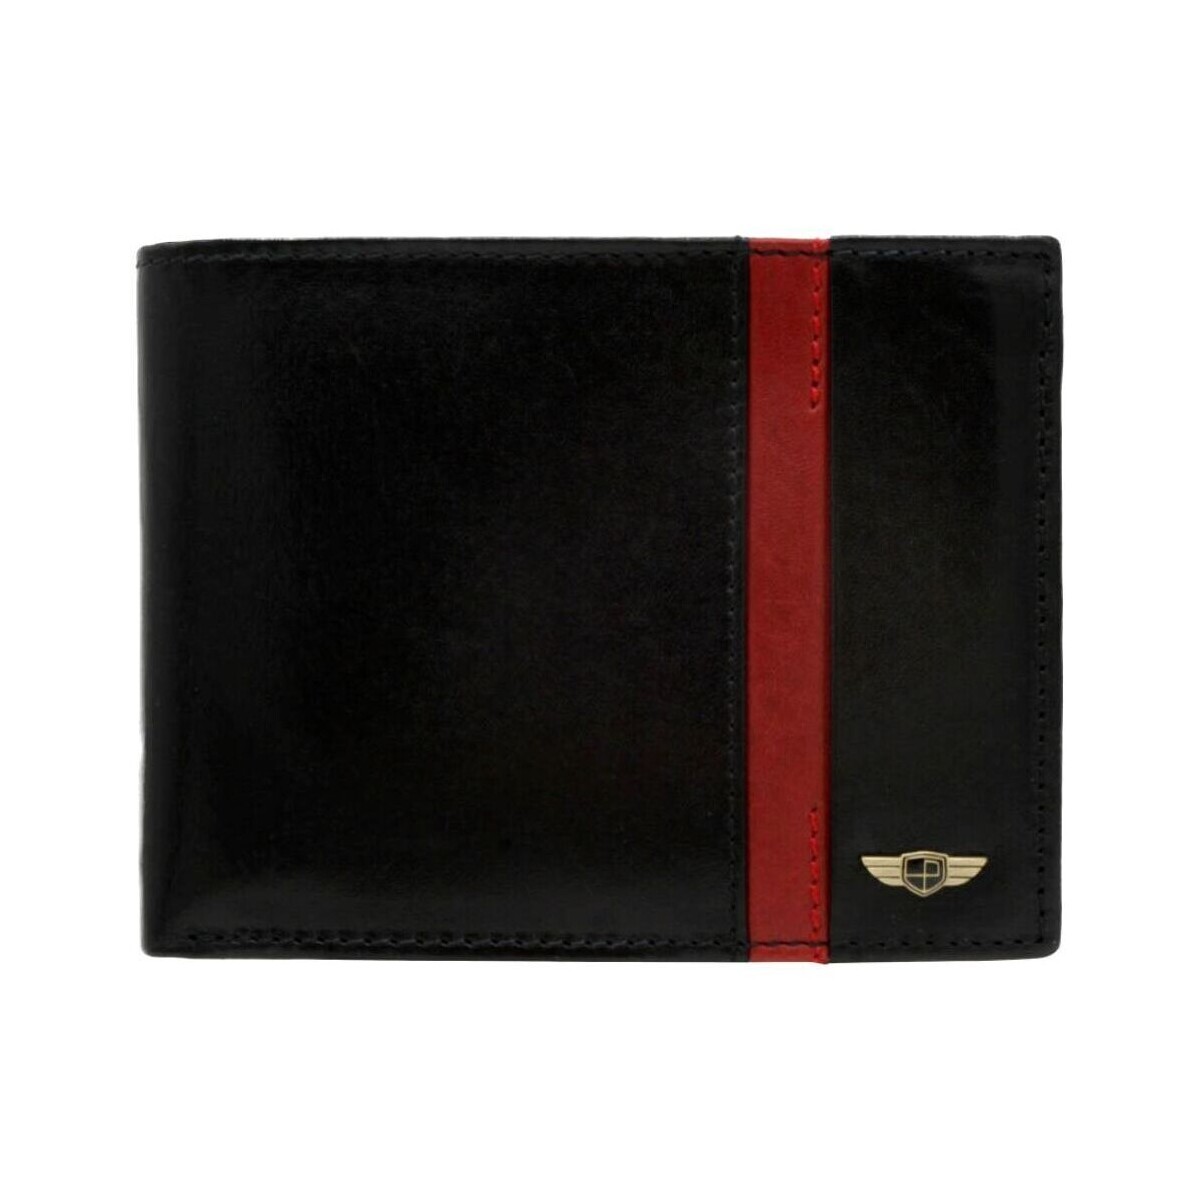 Peterson  Pánská peněženka Airiyo černo-červená  ruznobarevne